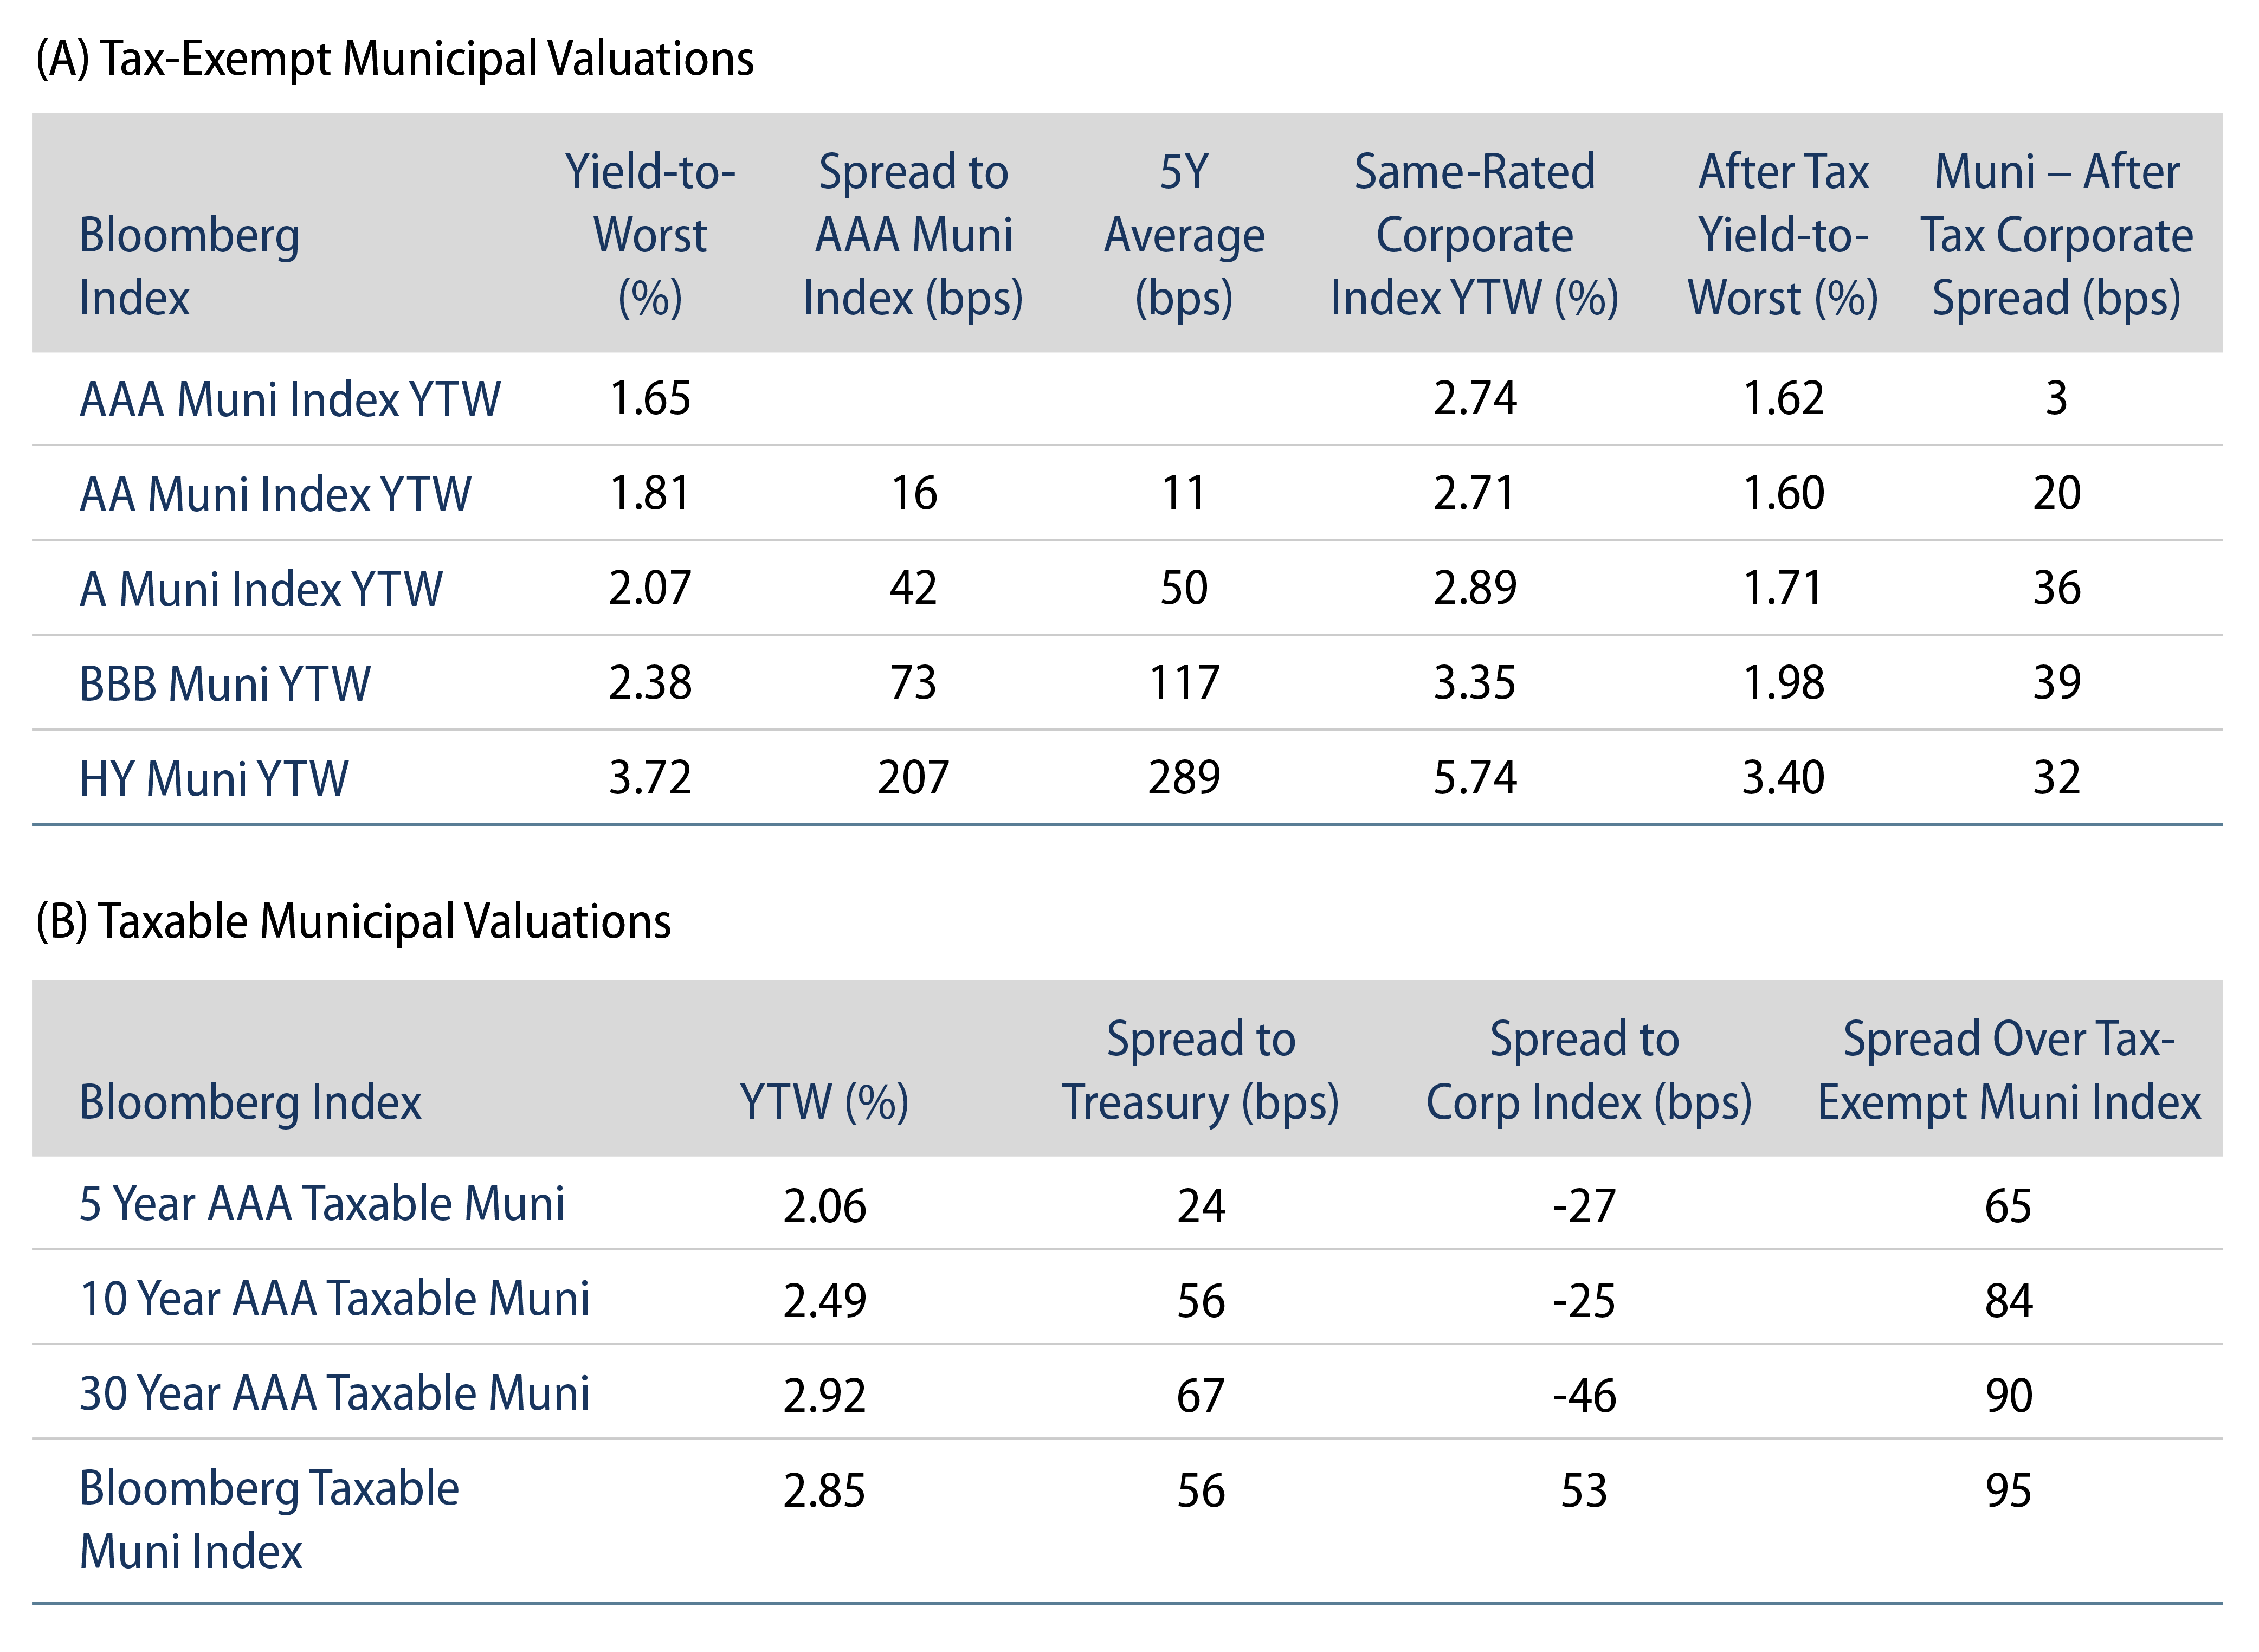 Tax-Exempt Muni Valuations